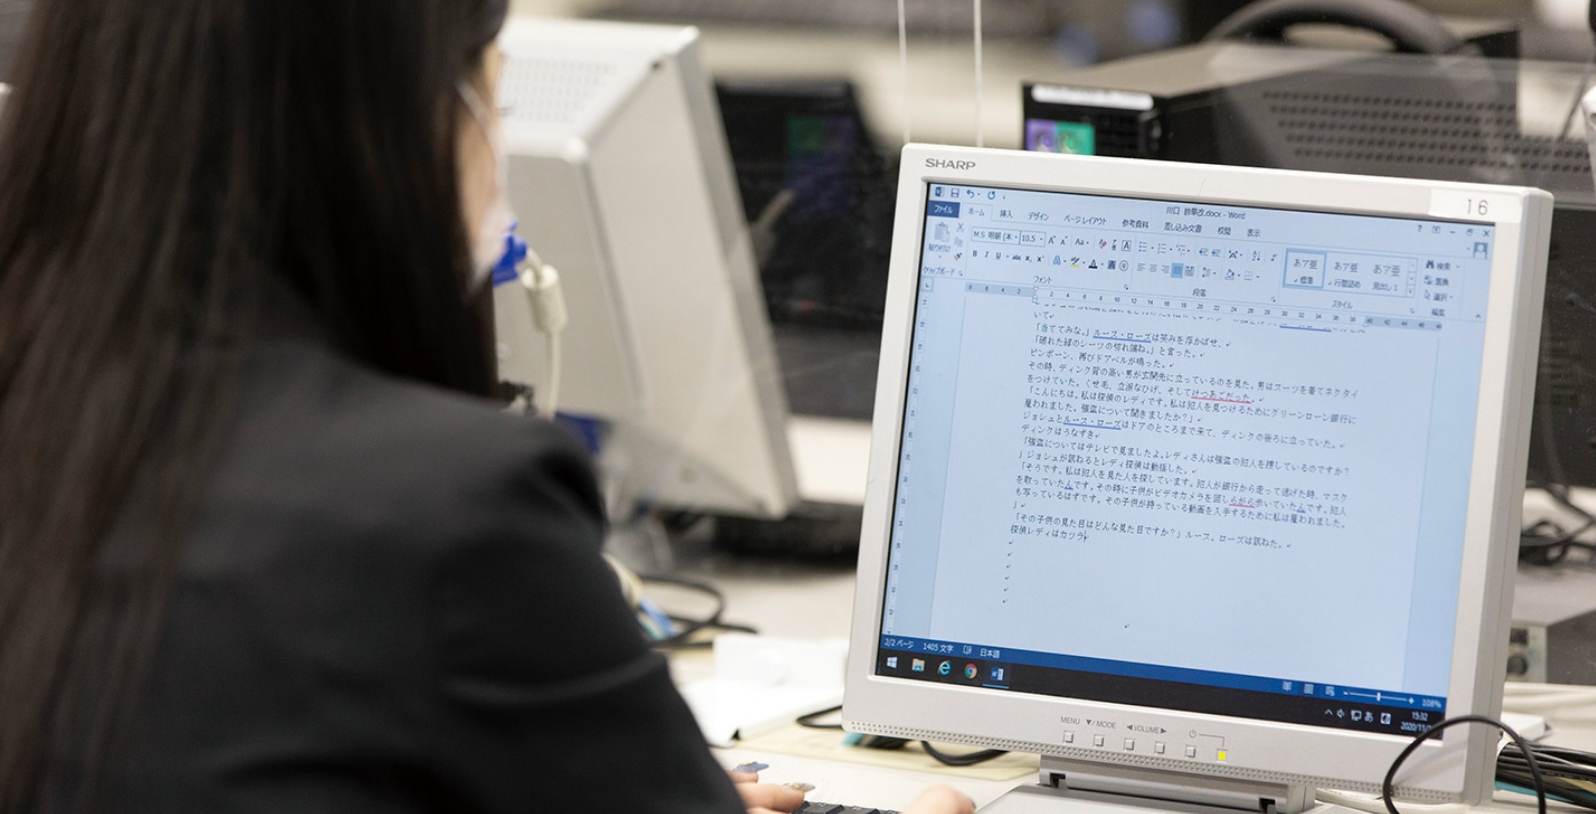 情報をリサーチするコンピュータスキルも磨く。大阪外語専門学校、翻訳基礎専攻